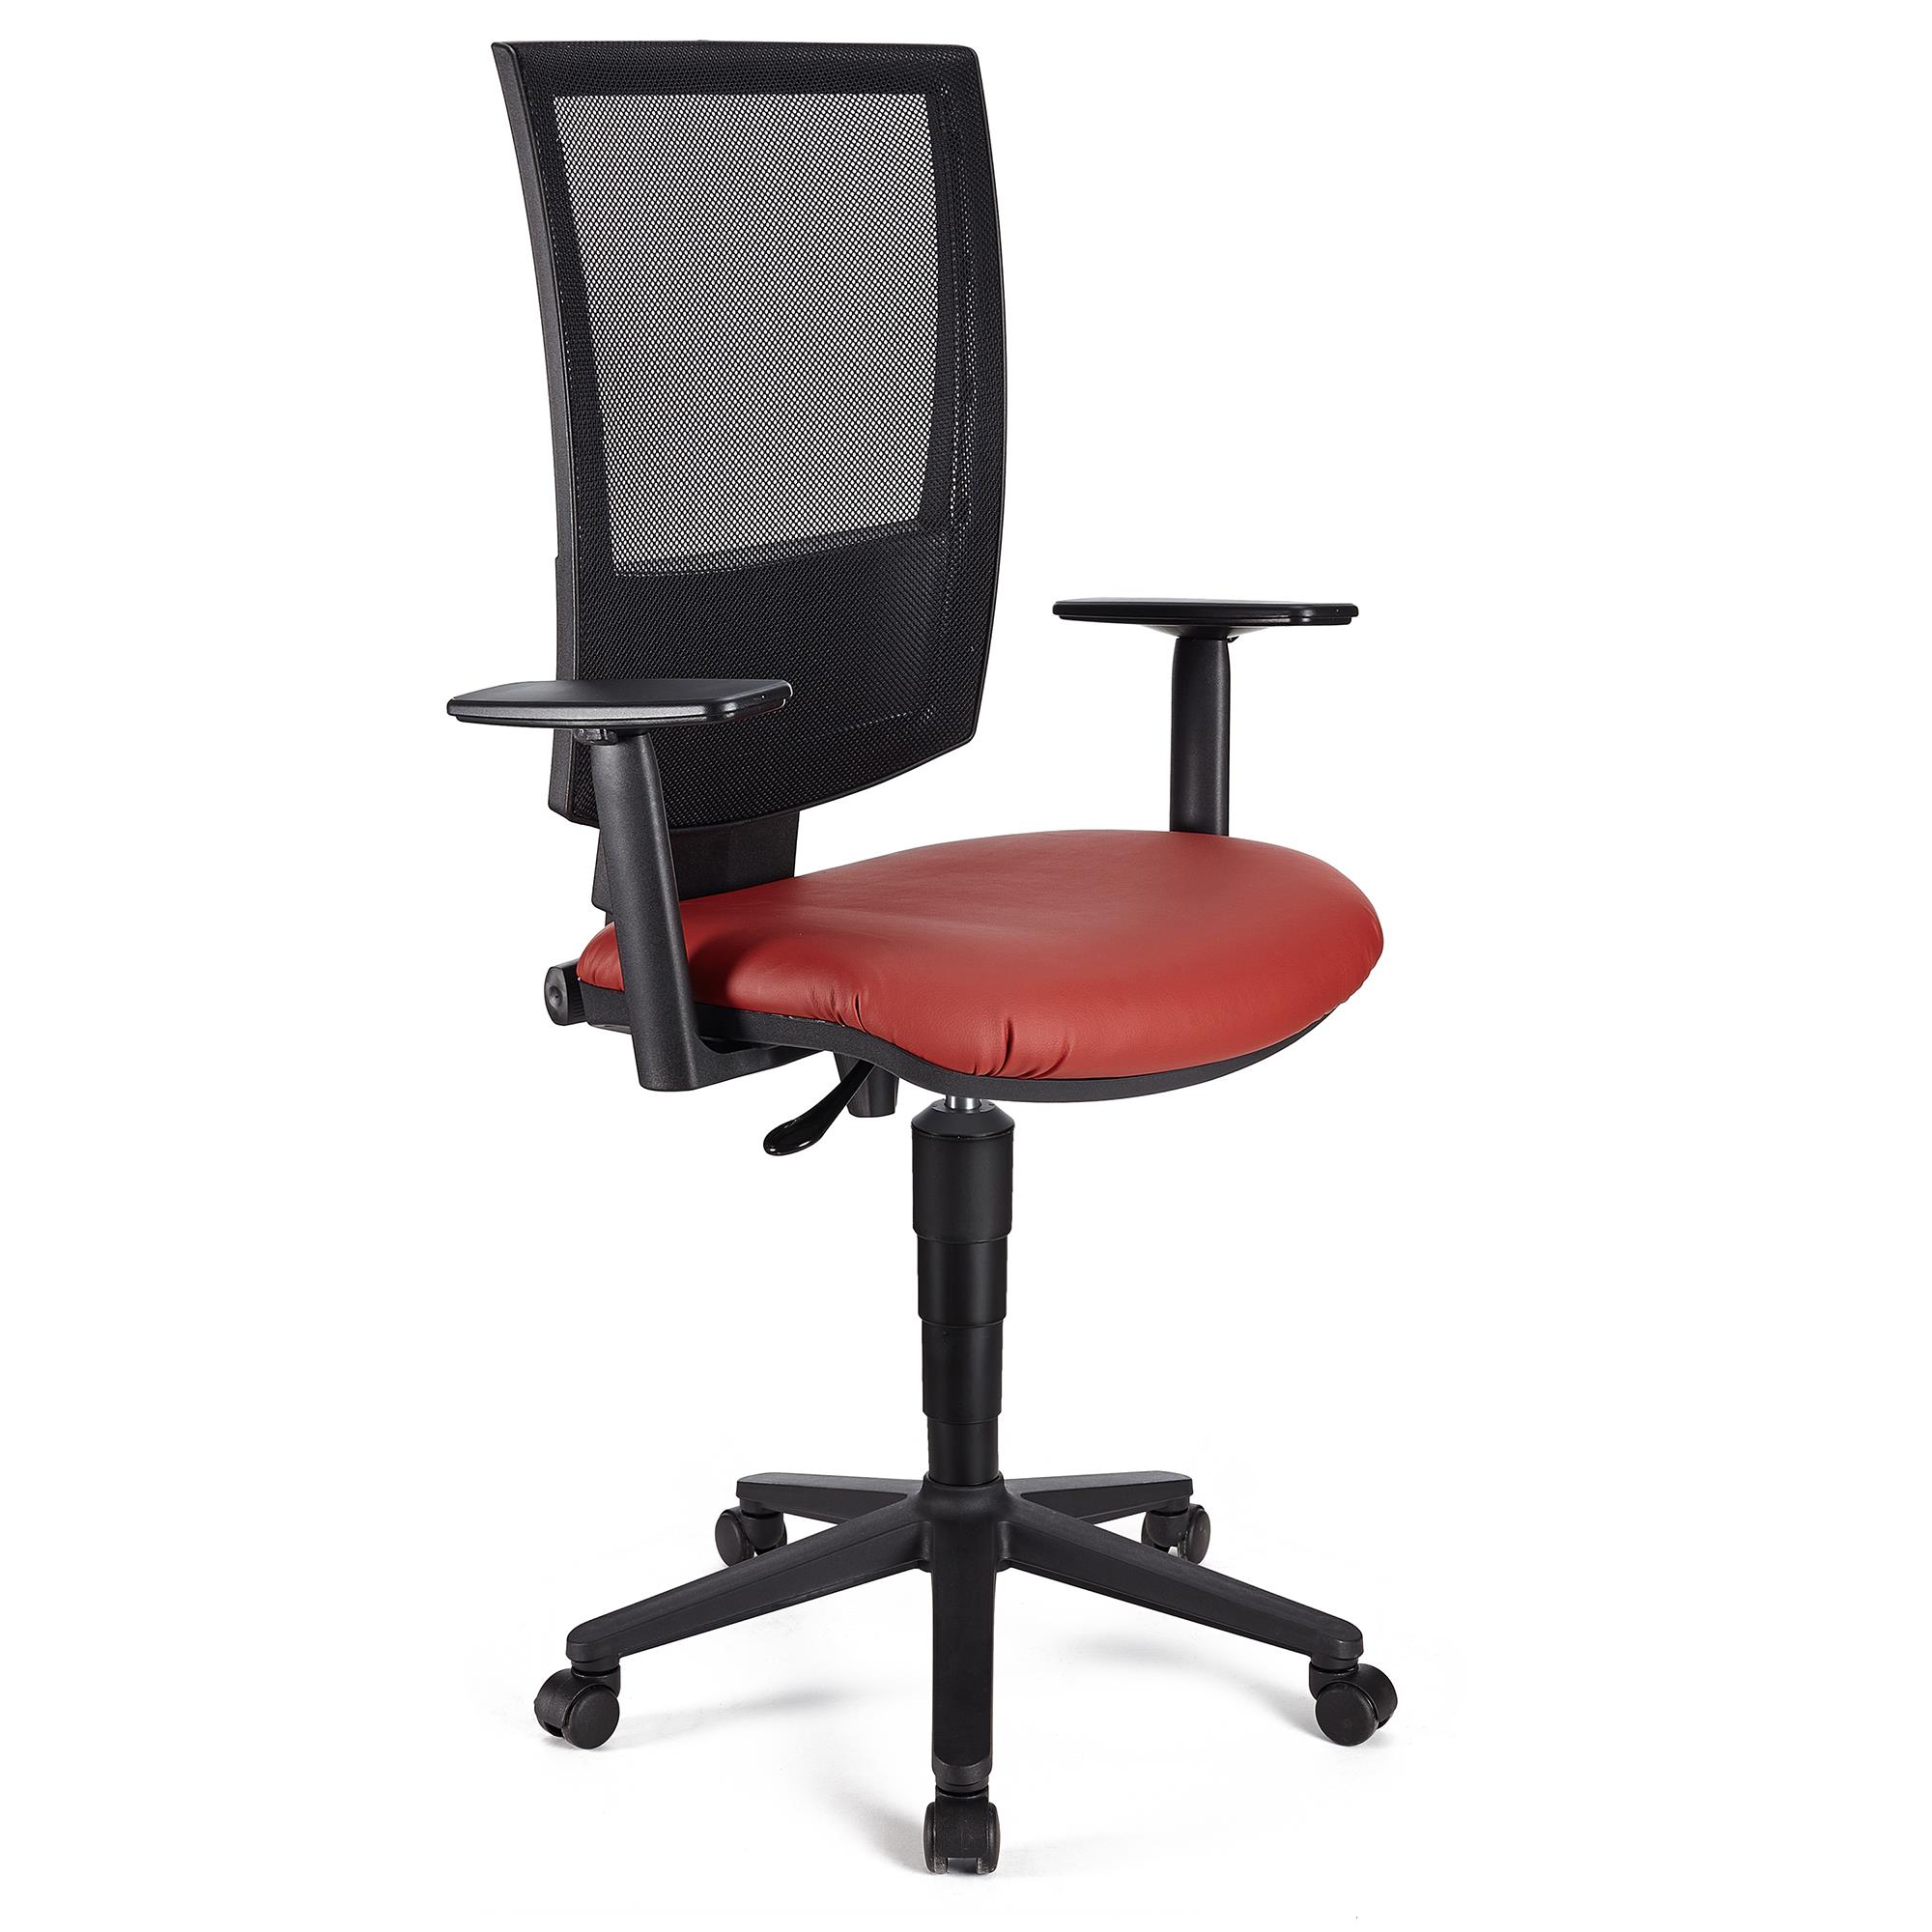 Bürostuhl PANDORA PLUS LEDER mit verstellbaren Armlehnen, Rückenlehne mit Netzbezug, dicke Polsterung, Farbe Rot